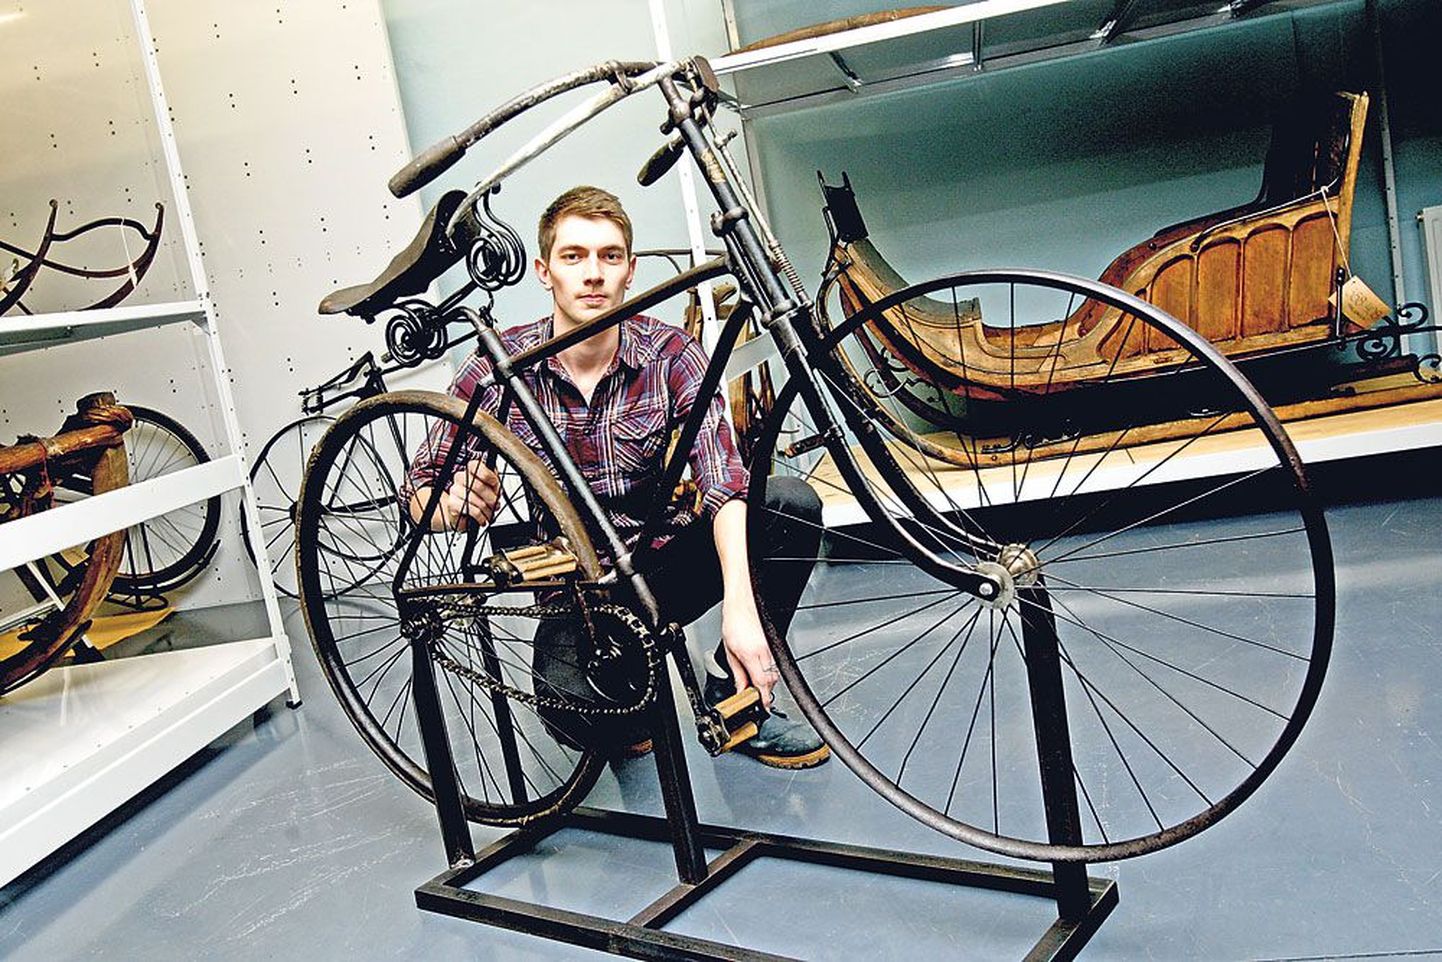 ERMi konservaatori Karl-Erik Hiiemaa taastatud haruldane Inglise jalgratas on teadaolevalt ainukene nii hästi säilinud eksemplar. Praegu muuseumi kogus seisev rariteet ootab pikisilmi ERMi uue hoone valmimist, et lõpuks rahva ette astuda.